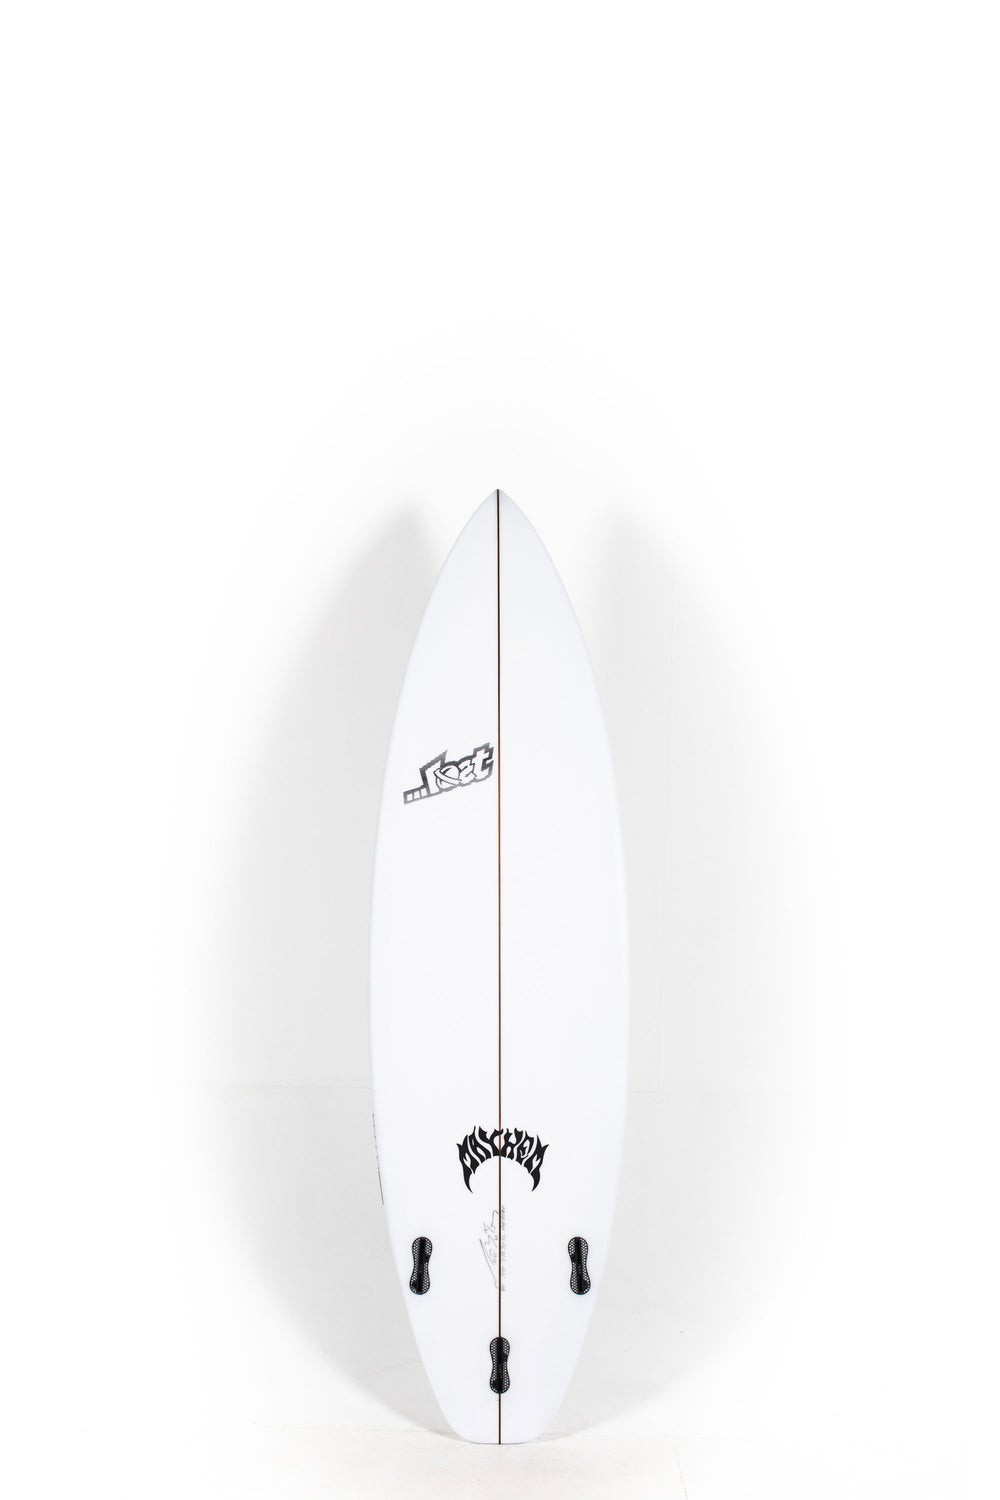 Lost Surfboard - 3.0_STUB DRIVER by Matt Biolos - 5'11” at PUKAS 